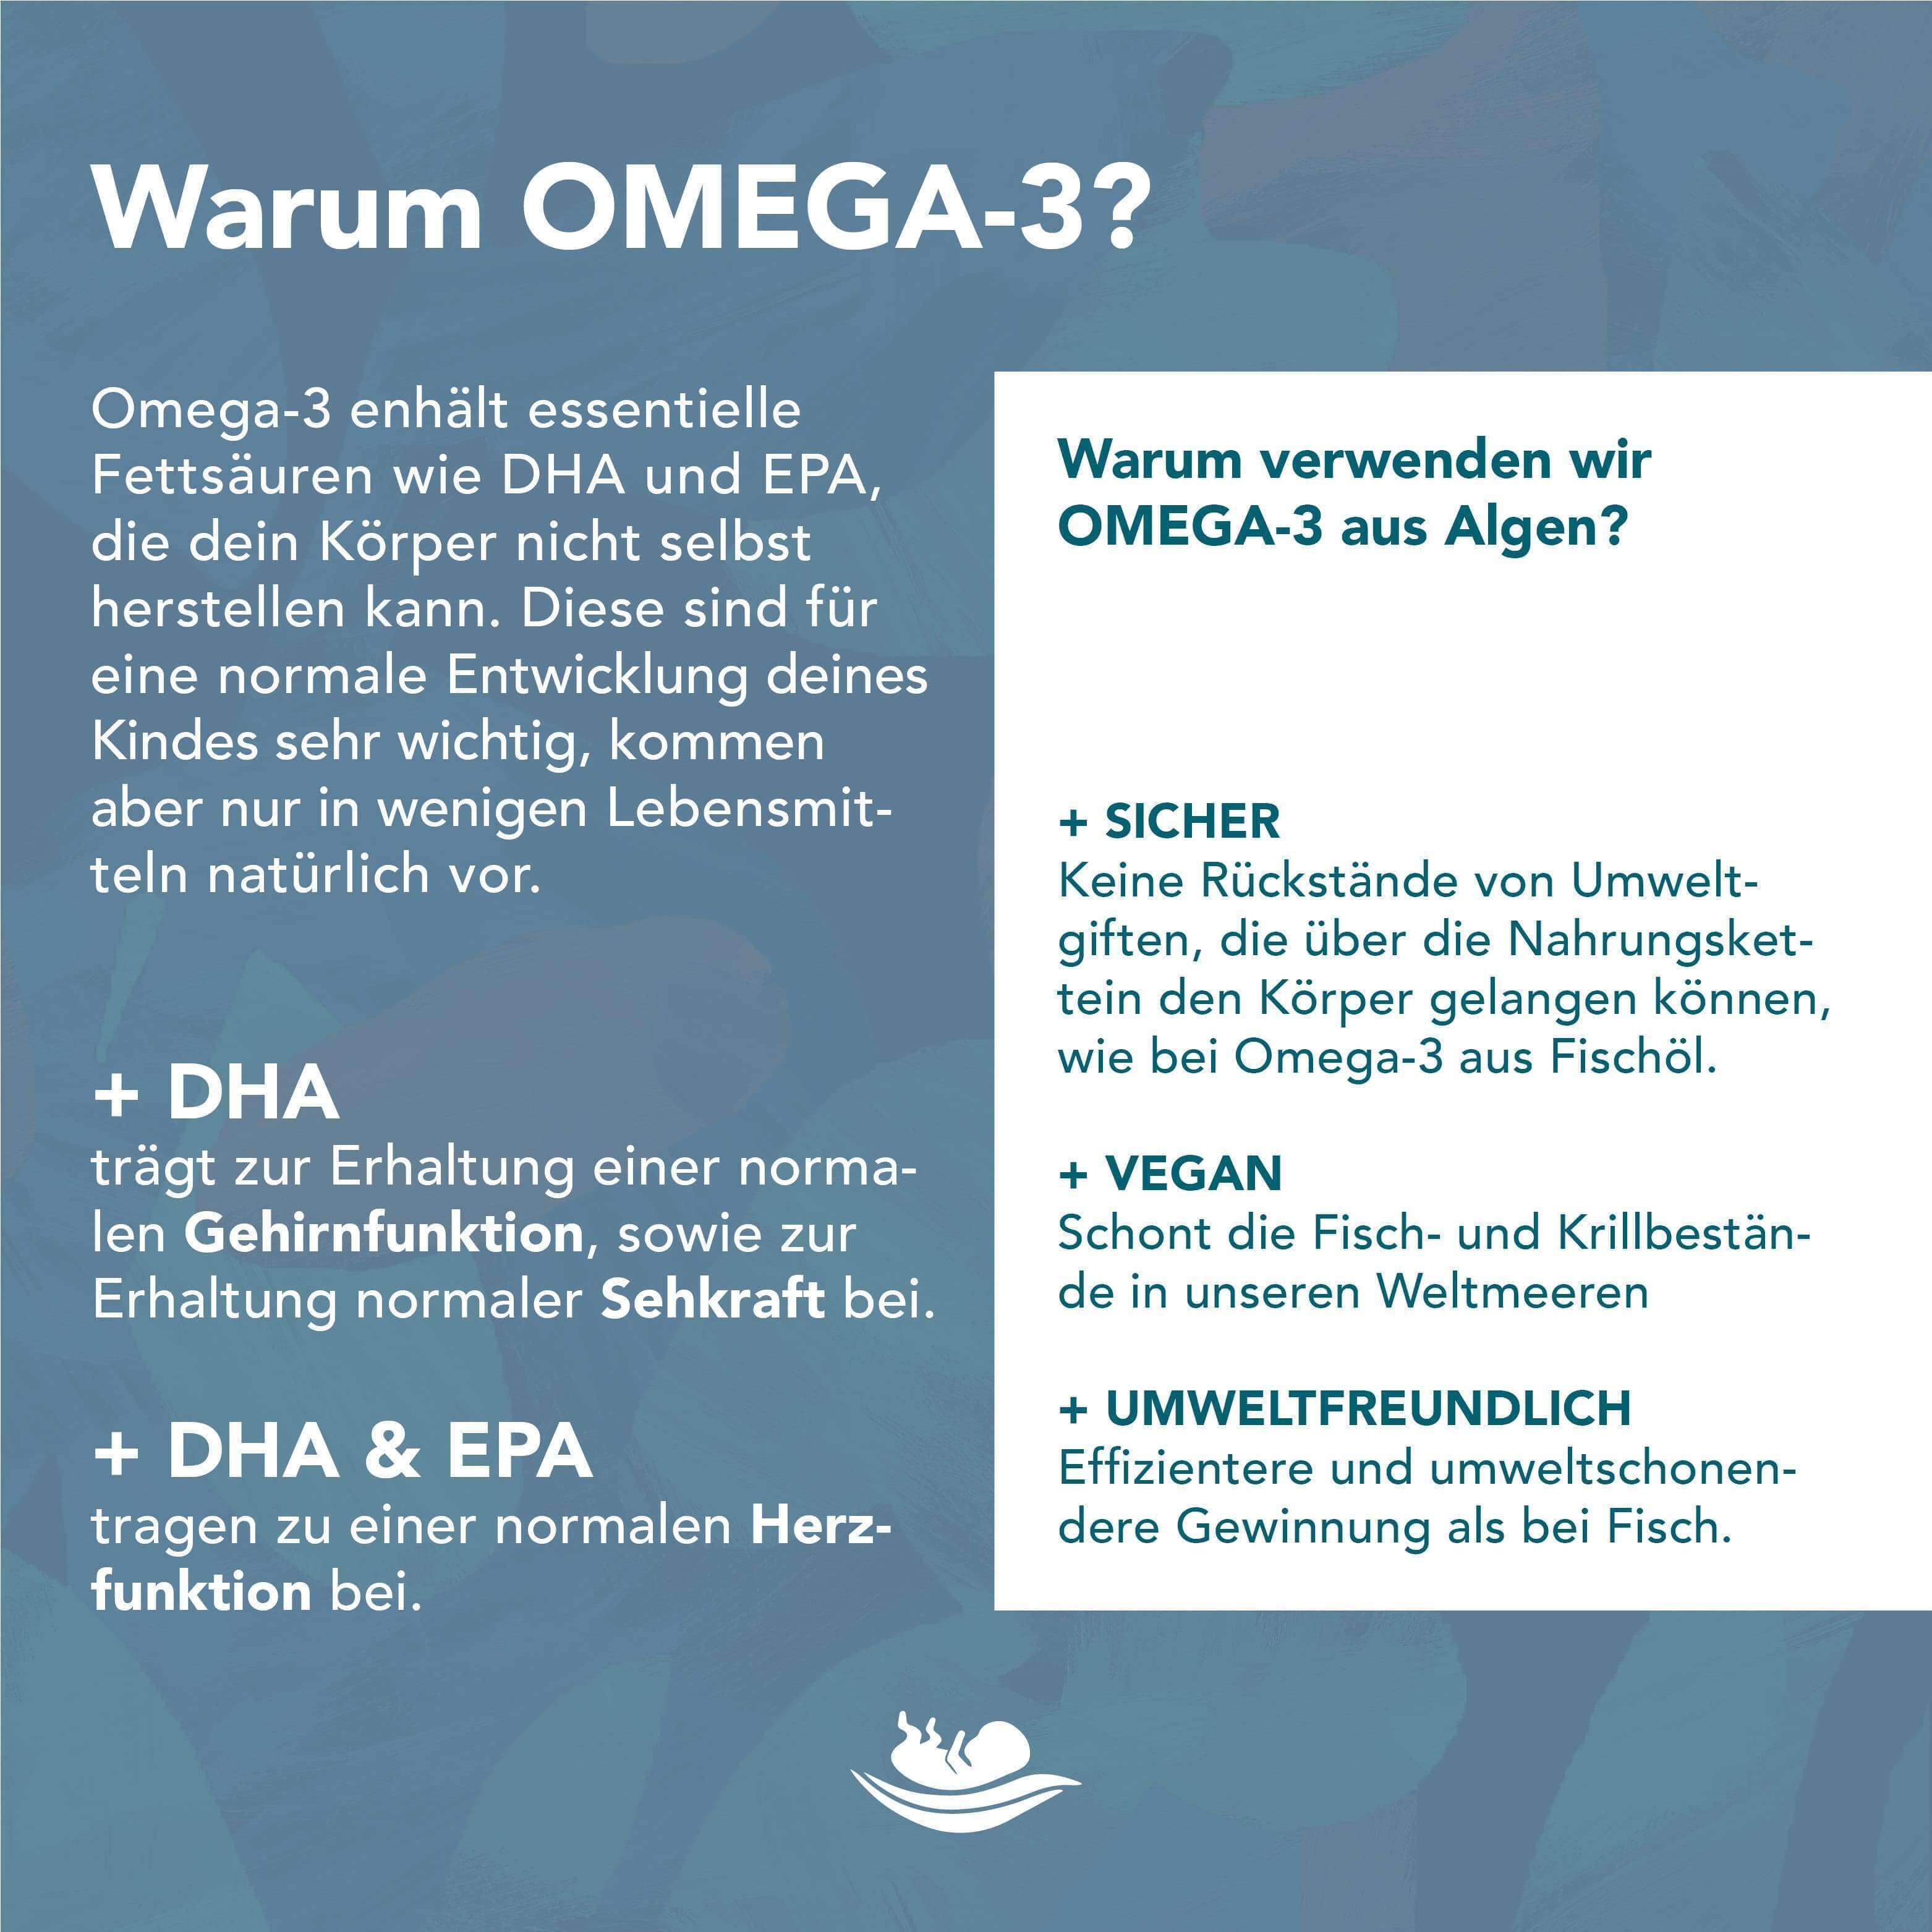 Die natürlichen und veganen Nahrungsergänzungsmittel für Omega-3 aus Algen unterstützen dich in der Schwangerschaft, Stillzeit und bei Kinderwunsch.